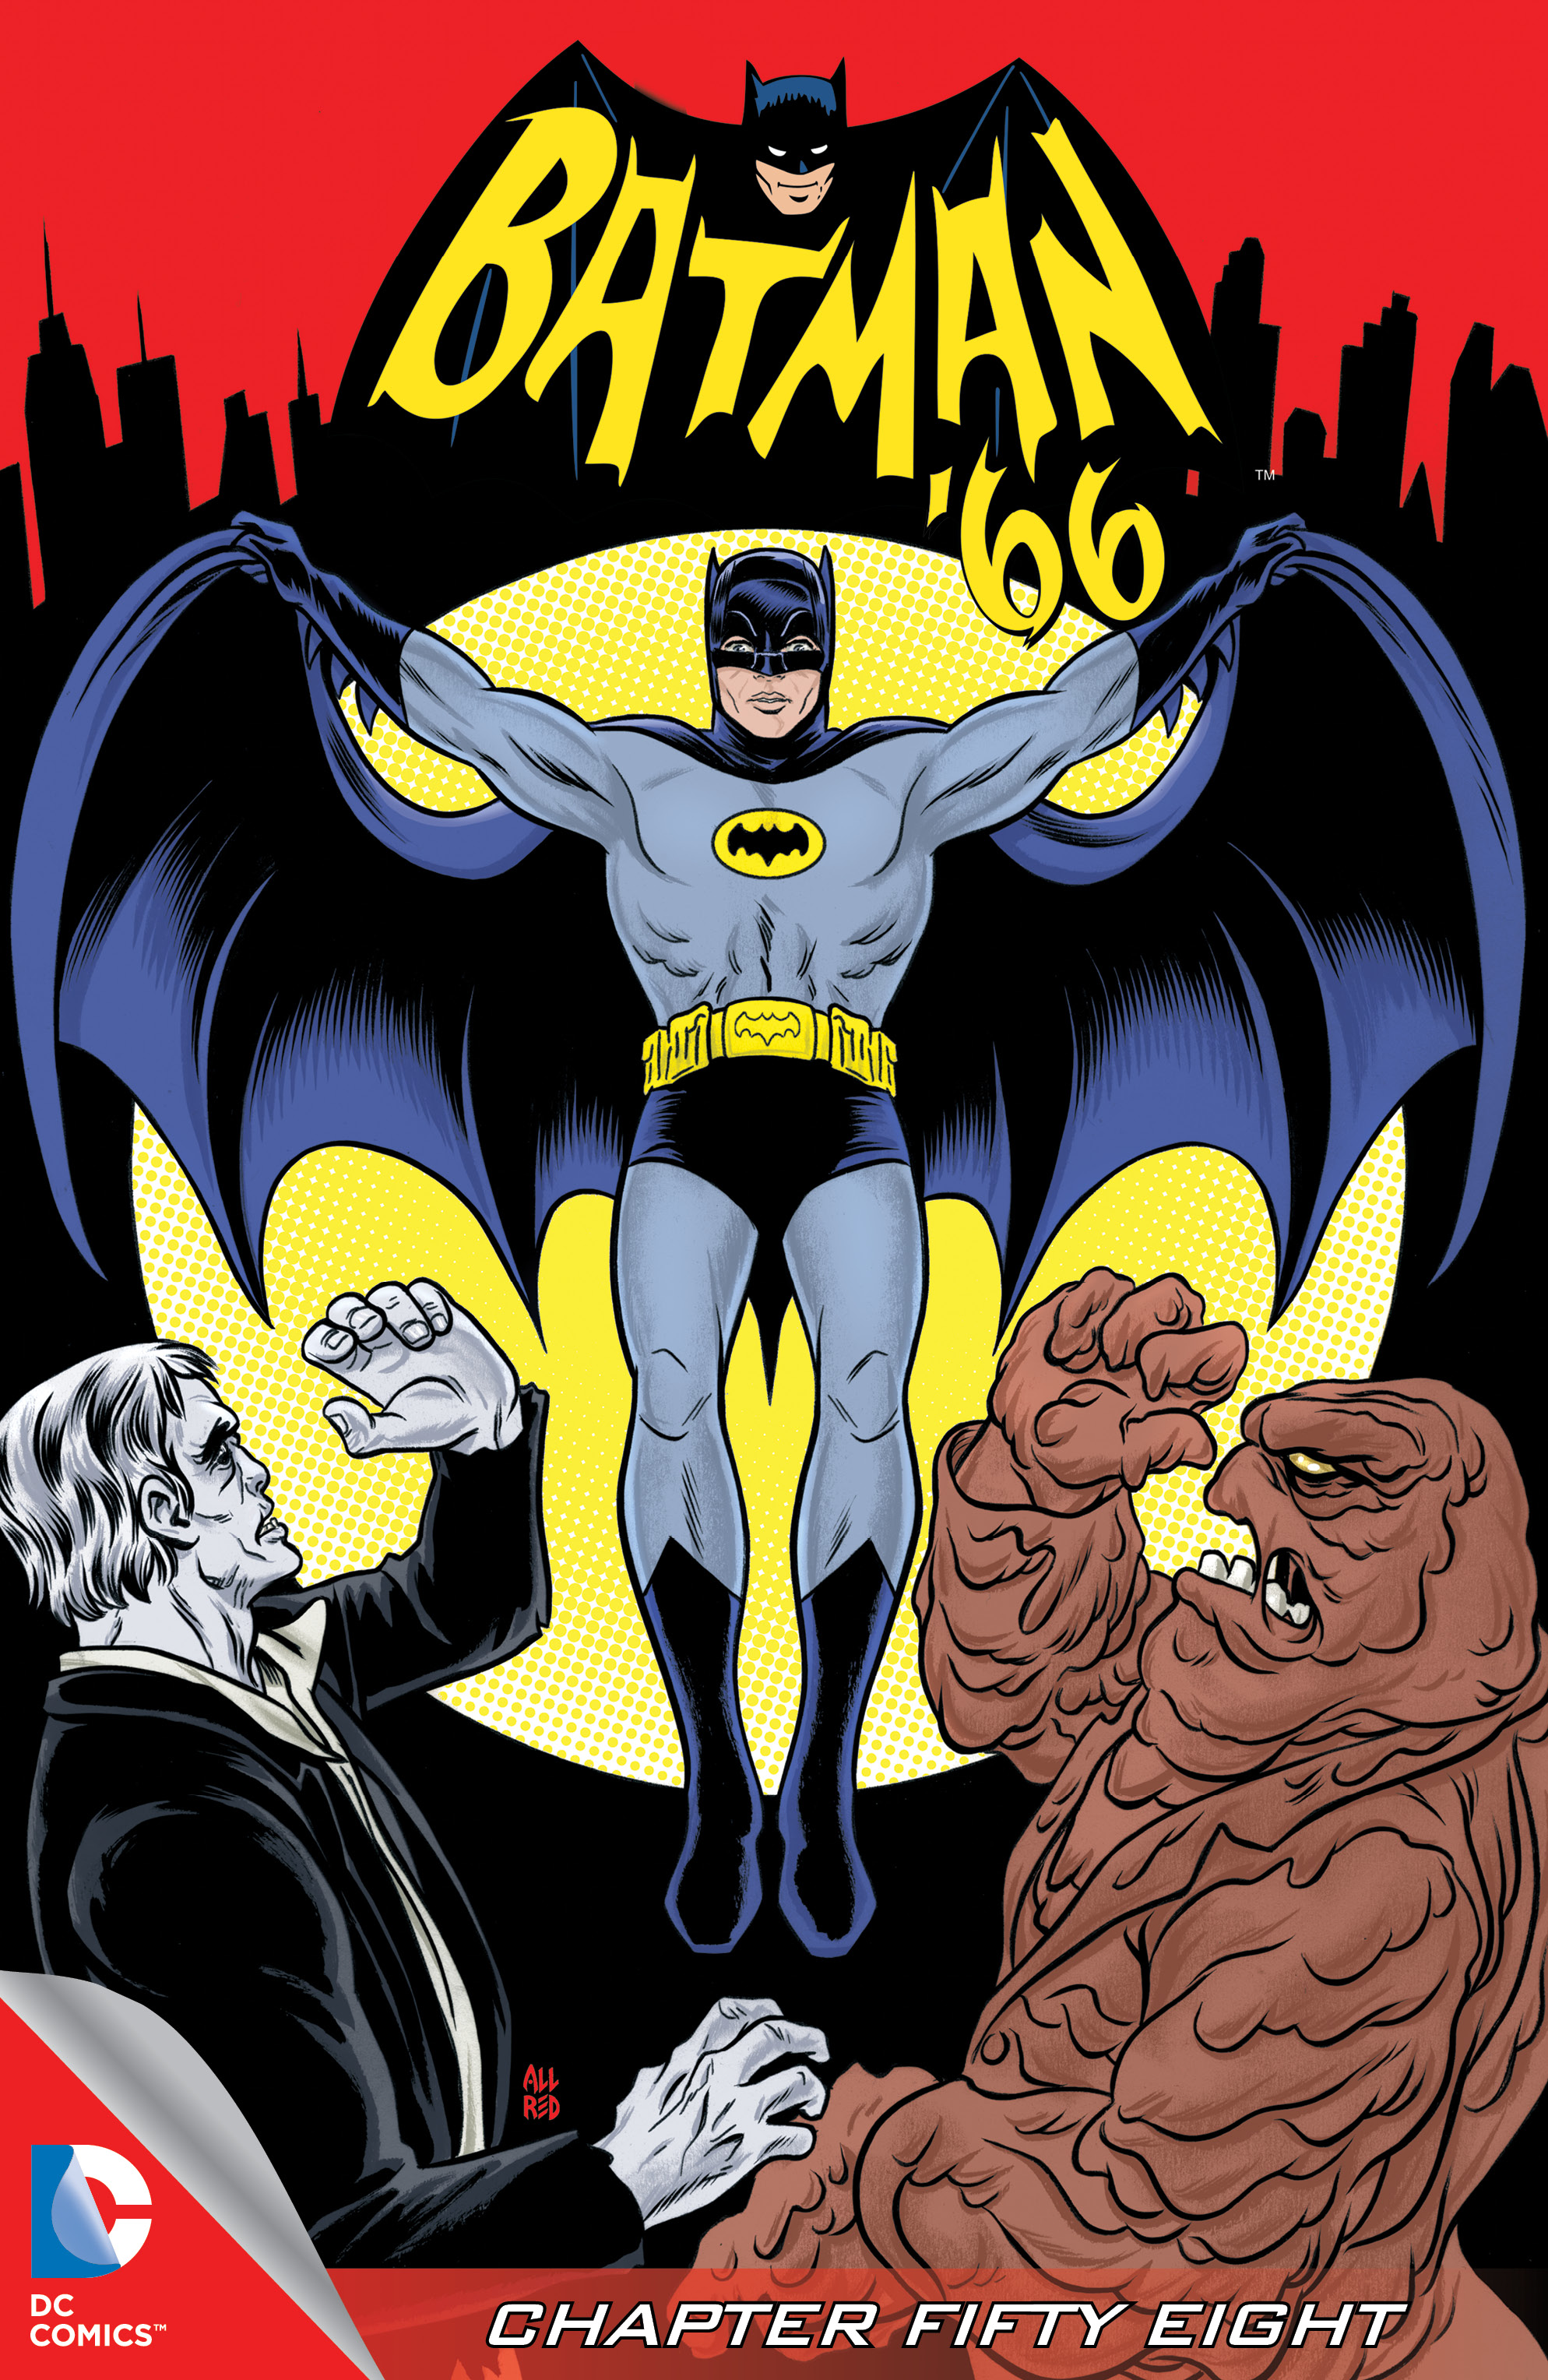 Batman '66 #58 preview images